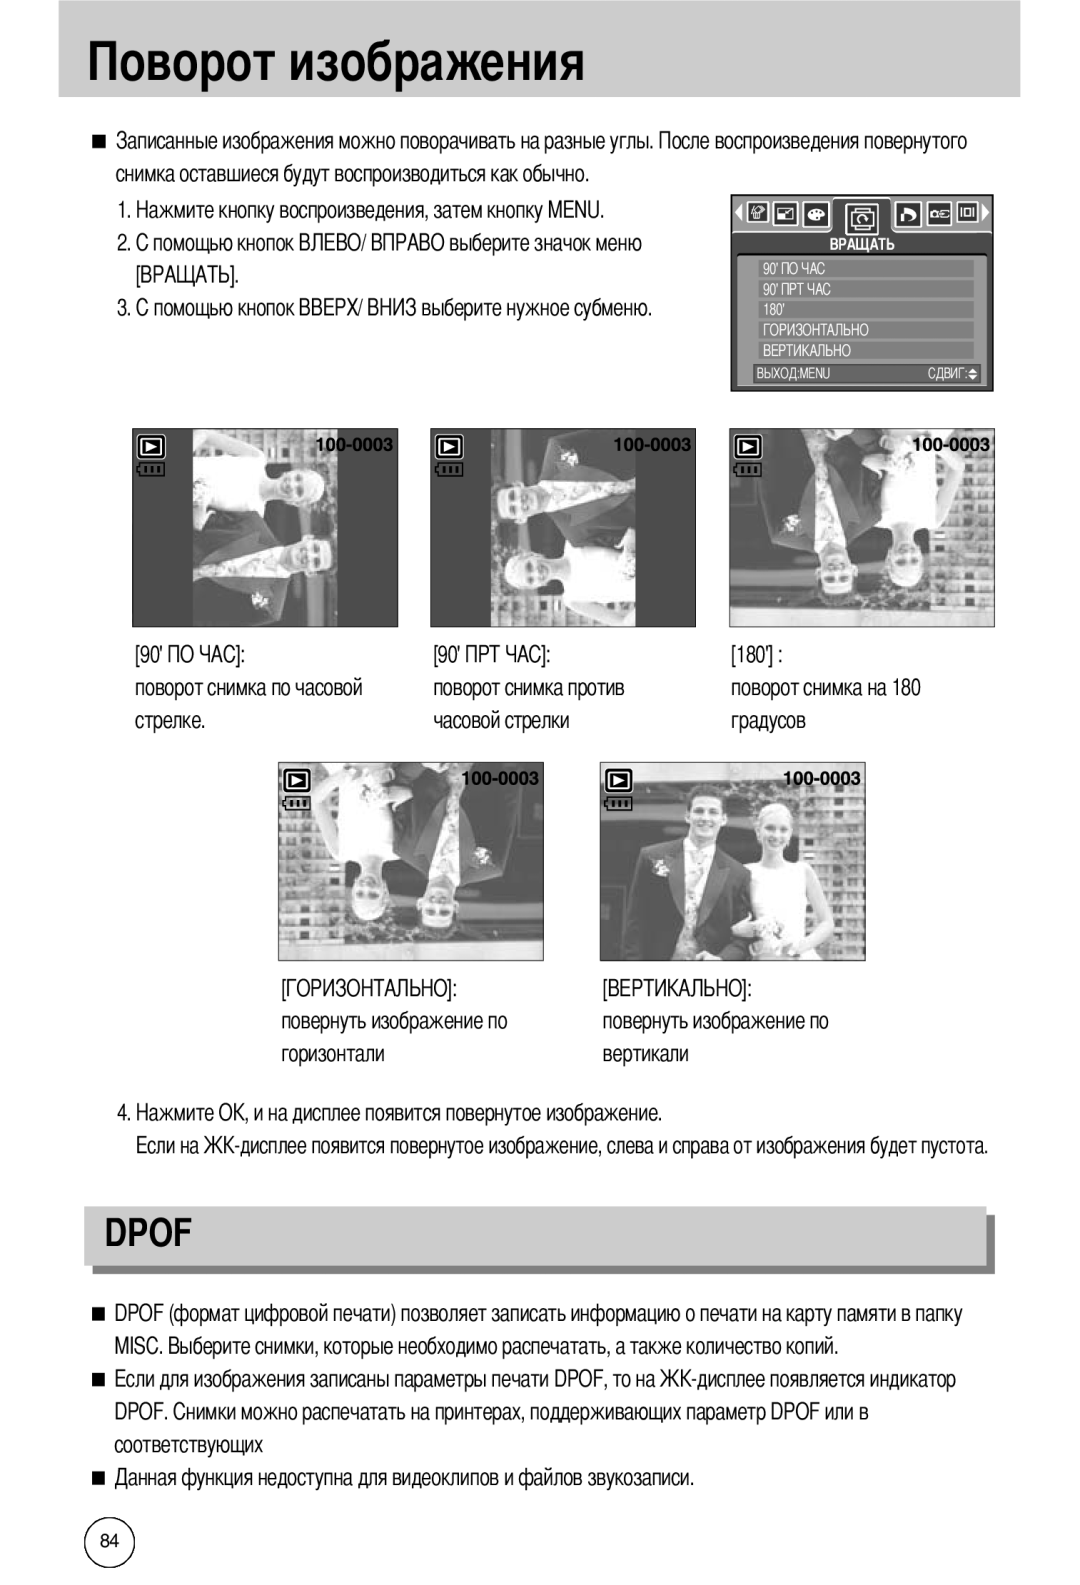 Samsung EC-I50ZZBBA/FR т изображения, Dpof, снимка оставшиеся будут воспроизводиться как обычно, стрелке, часовой стрелки 